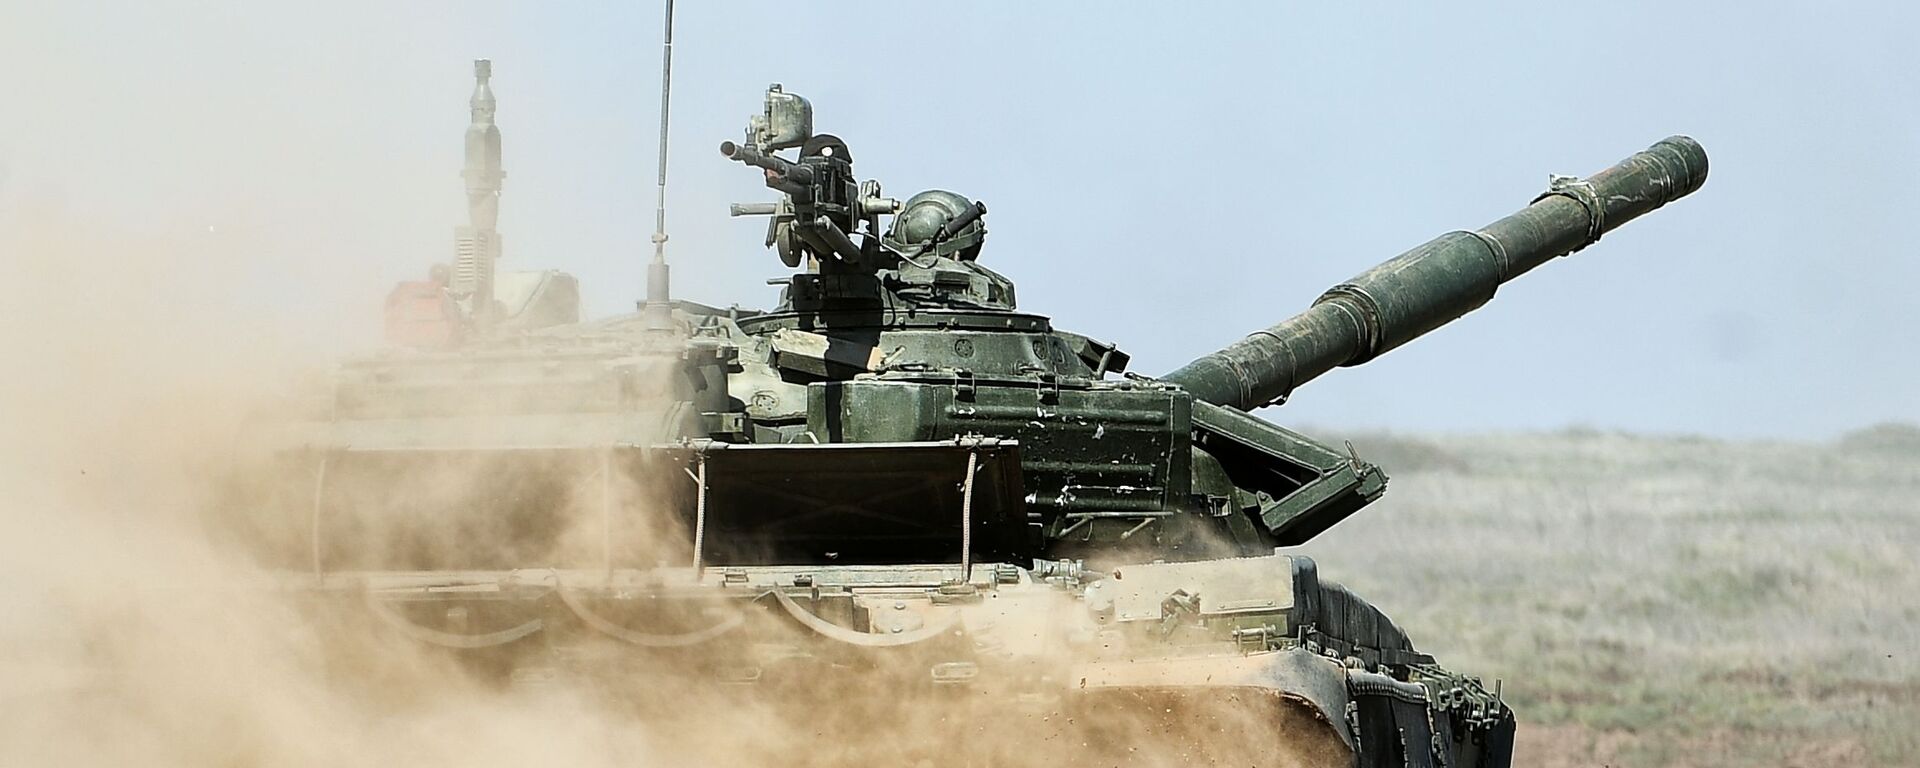 Xe tăng T-90 trong cuộc tập trận của các đơn vị súng trường, xe tăng và pháo cơ giới ở vùng Volgograd - Sputnik Việt Nam, 1920, 10.08.2021